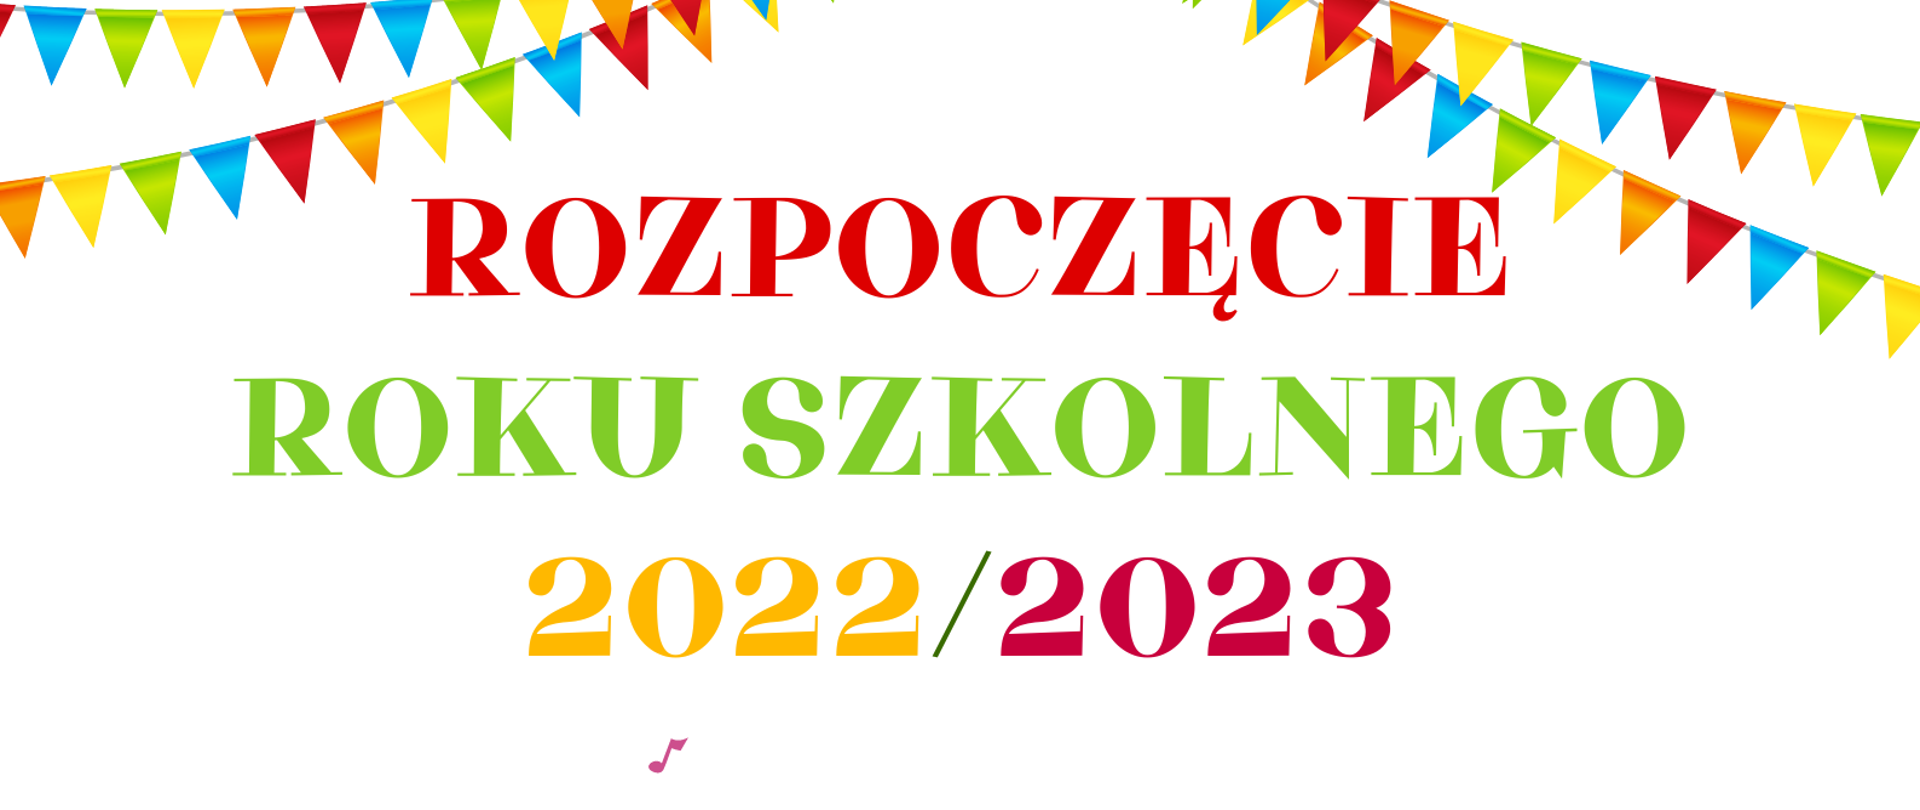 Organizacja uroczystości rozpoczęcia roku szkolnego  w dniu 1 września 2022r. 